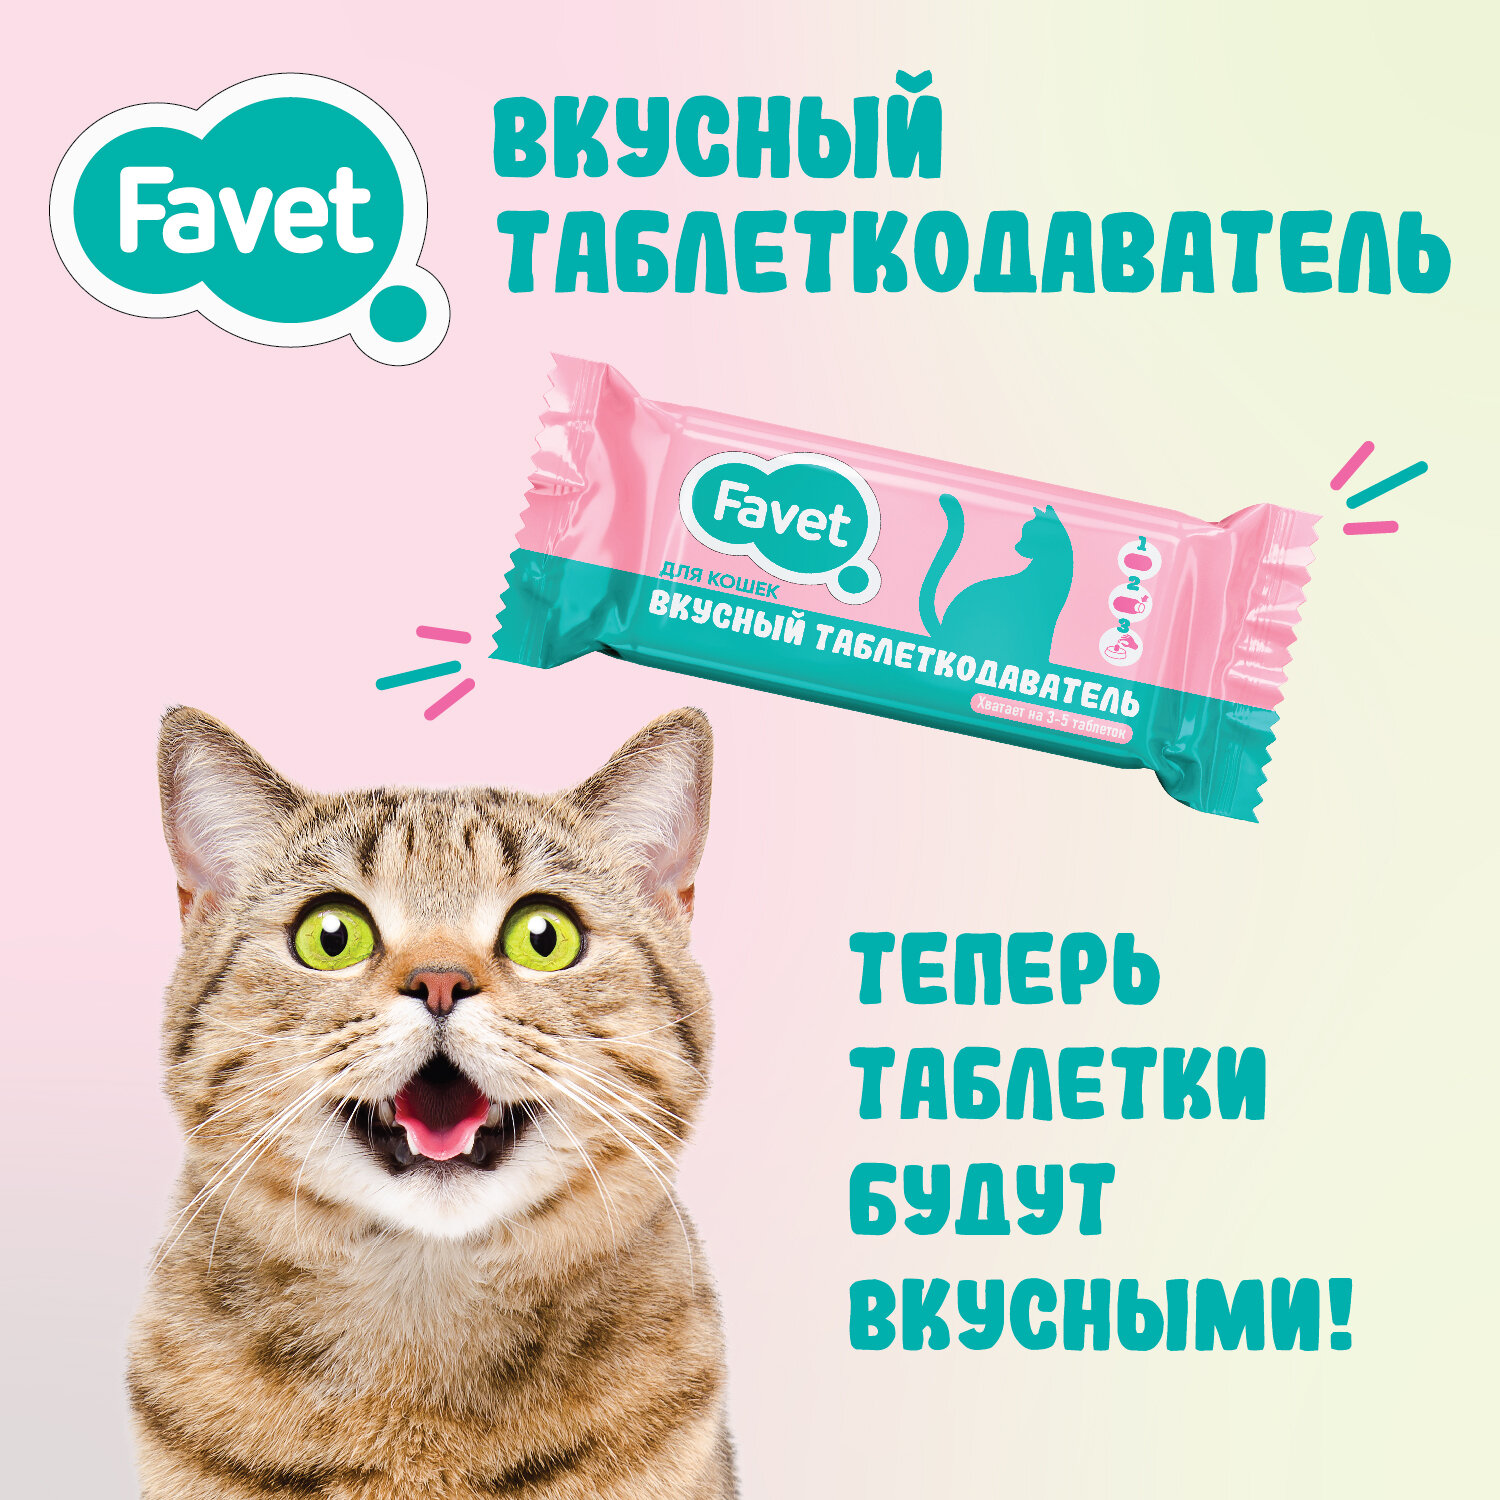 Favet Вкусный таблеткодаватель по 1 шт для кошек, 4 упаковки - фотография № 2